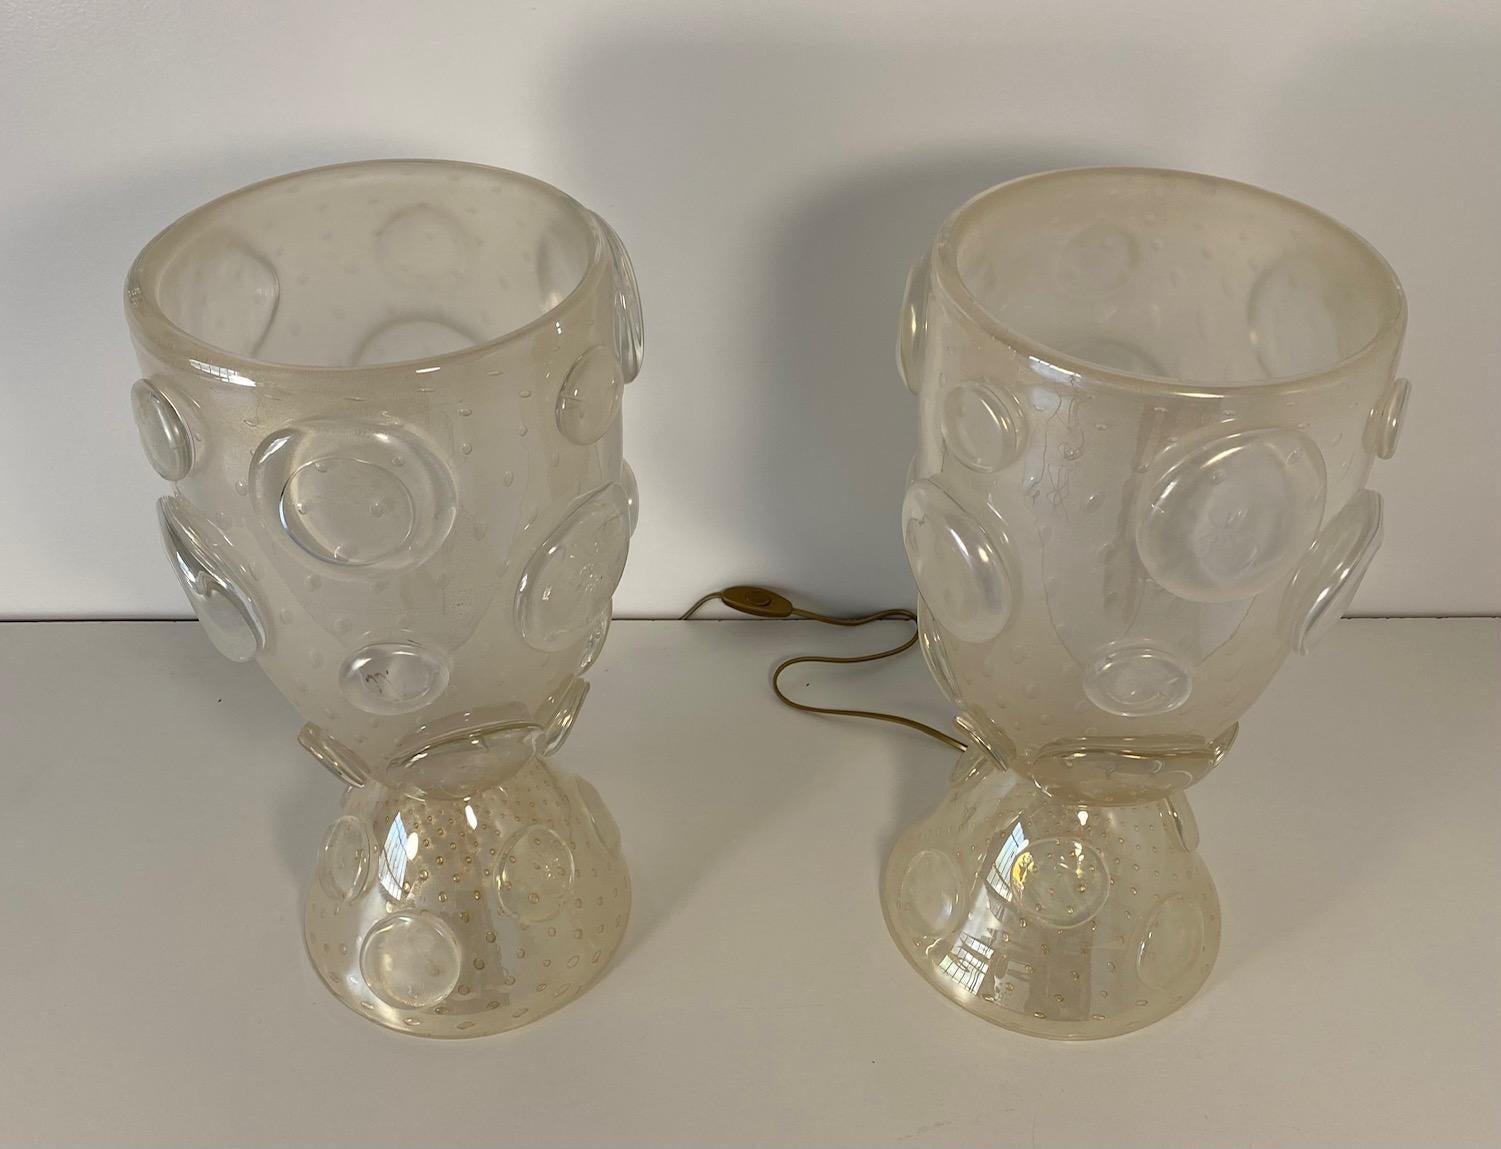 Cette paire de lampes vases a été produite en Italie, à Murano, la capitale mondiale de la verrerie. 
Elles sont entièrement réalisées en verre blanc de Murano, avec des bulles d'or à l'intérieur. Les cercles décoratifs sont également fabriqués